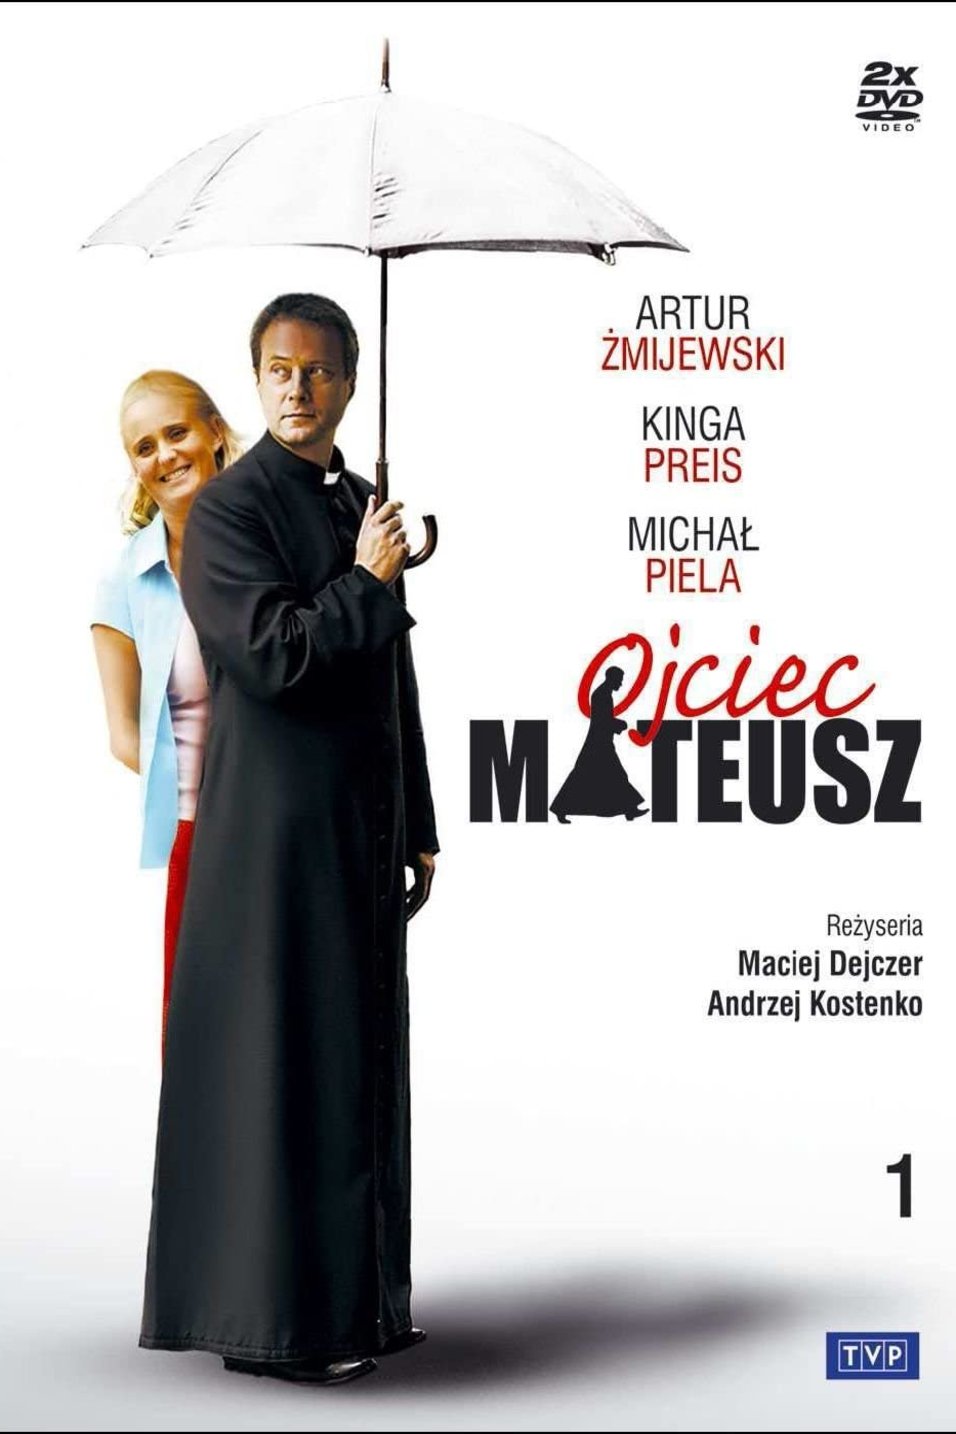 L'affiche originale du film Ojciec Mateusz en polonais